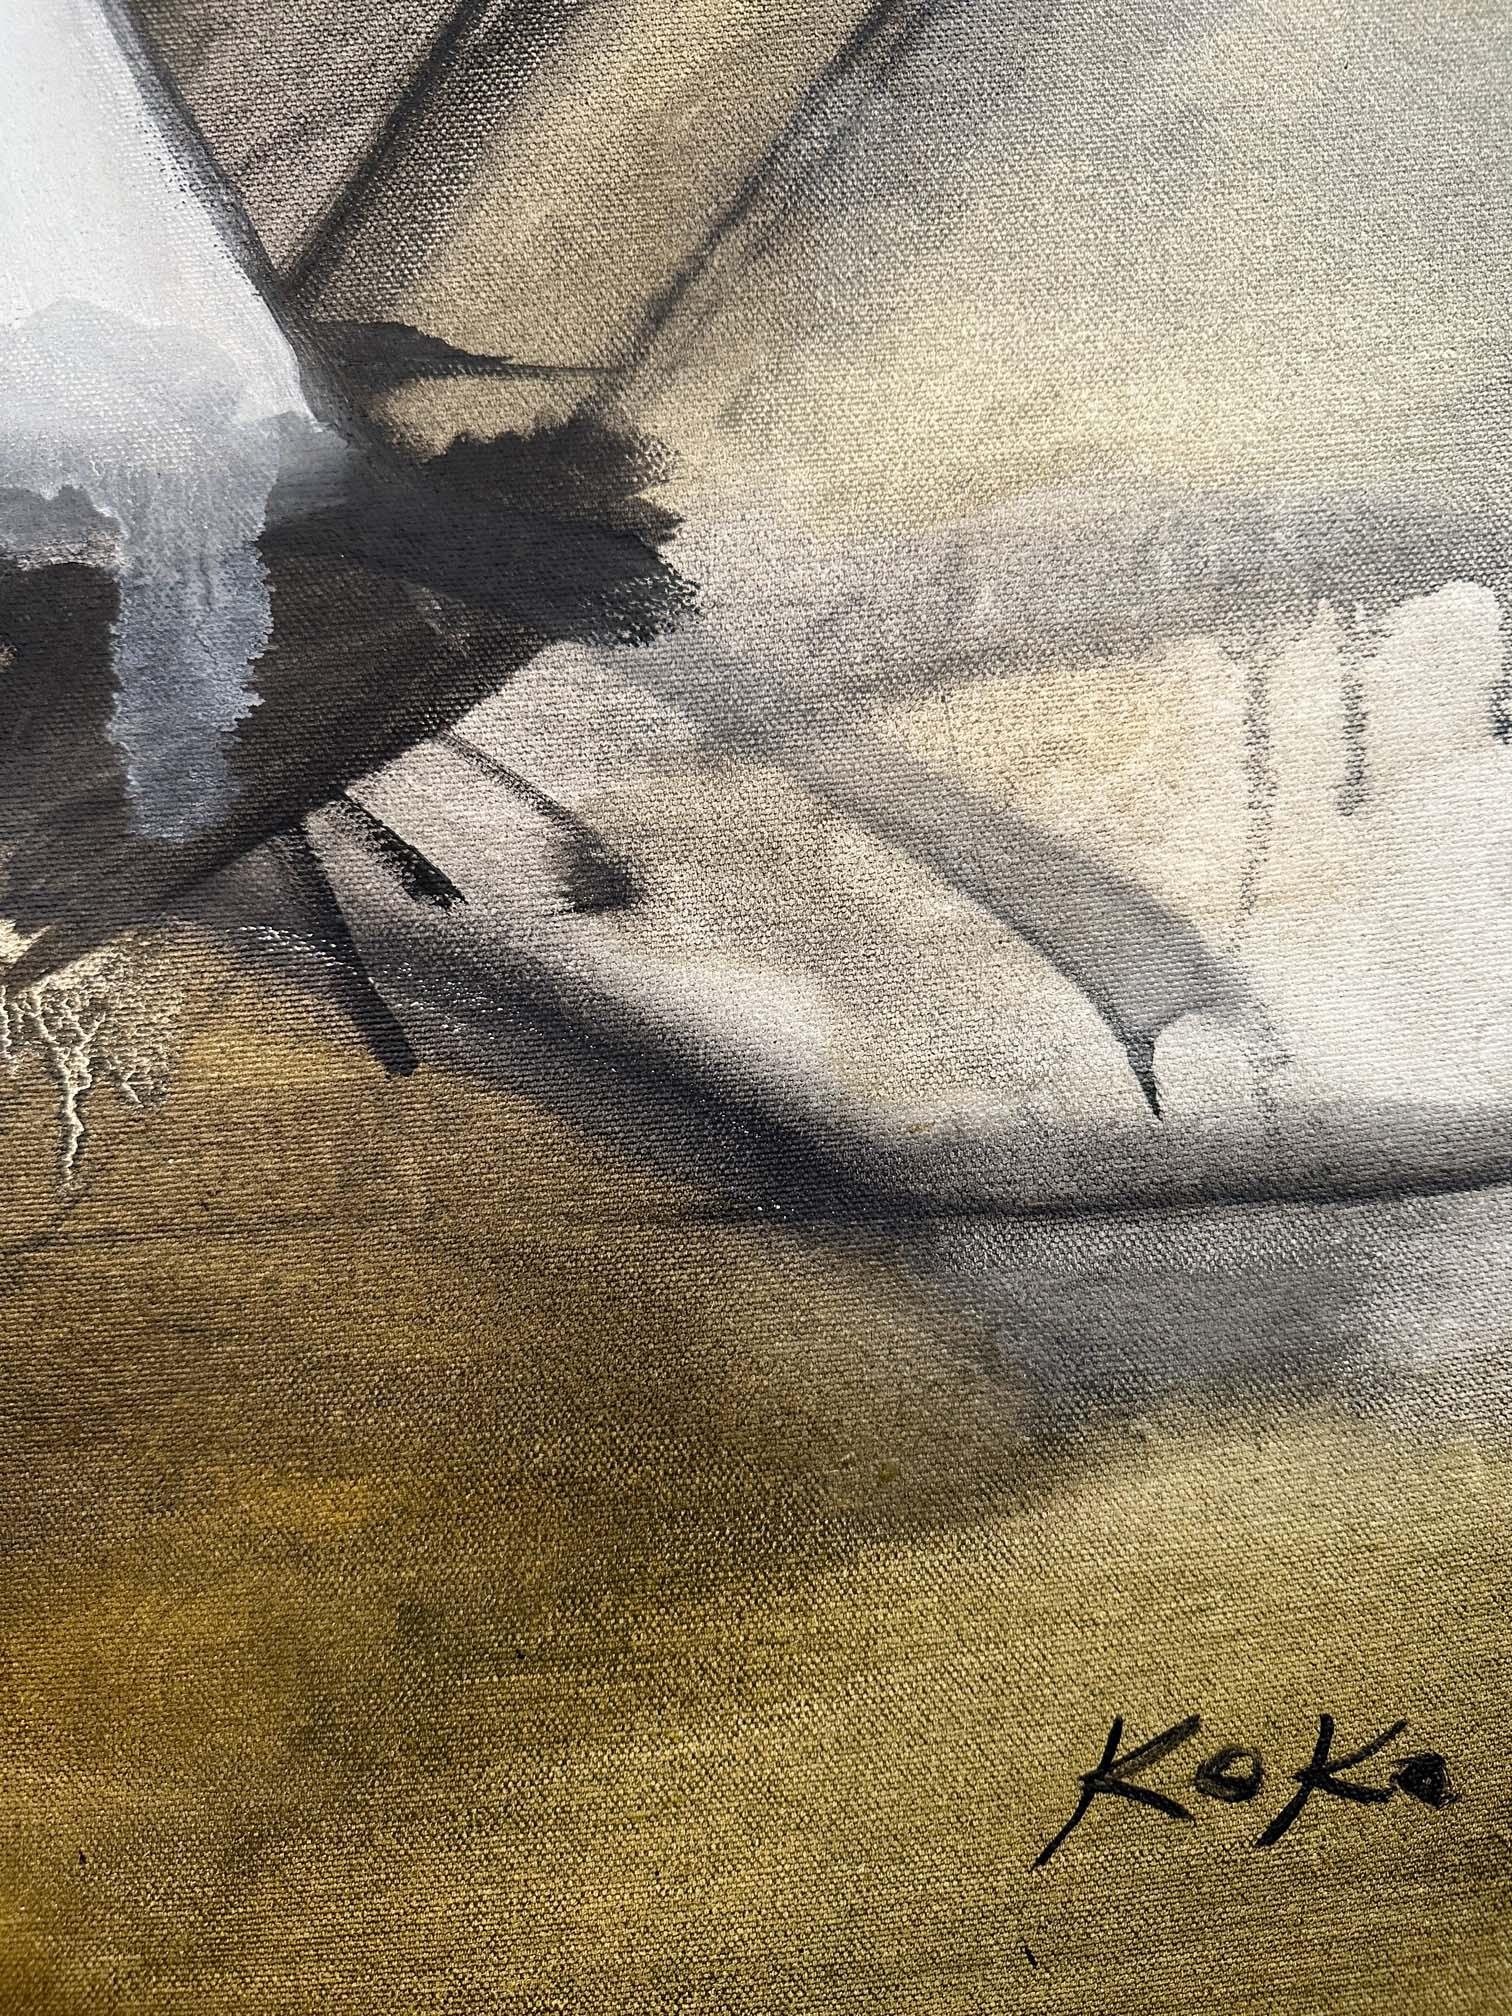 L'artiste Koko peint ses scènes préférées à l'aide de ses coups de pinceau puissants caractéristiques, tout en conservant une touche de douceur sur la toile. Dans cette peinture, les bateaux sont représentés à l'arrêt. Elle est réalisée à l'huile